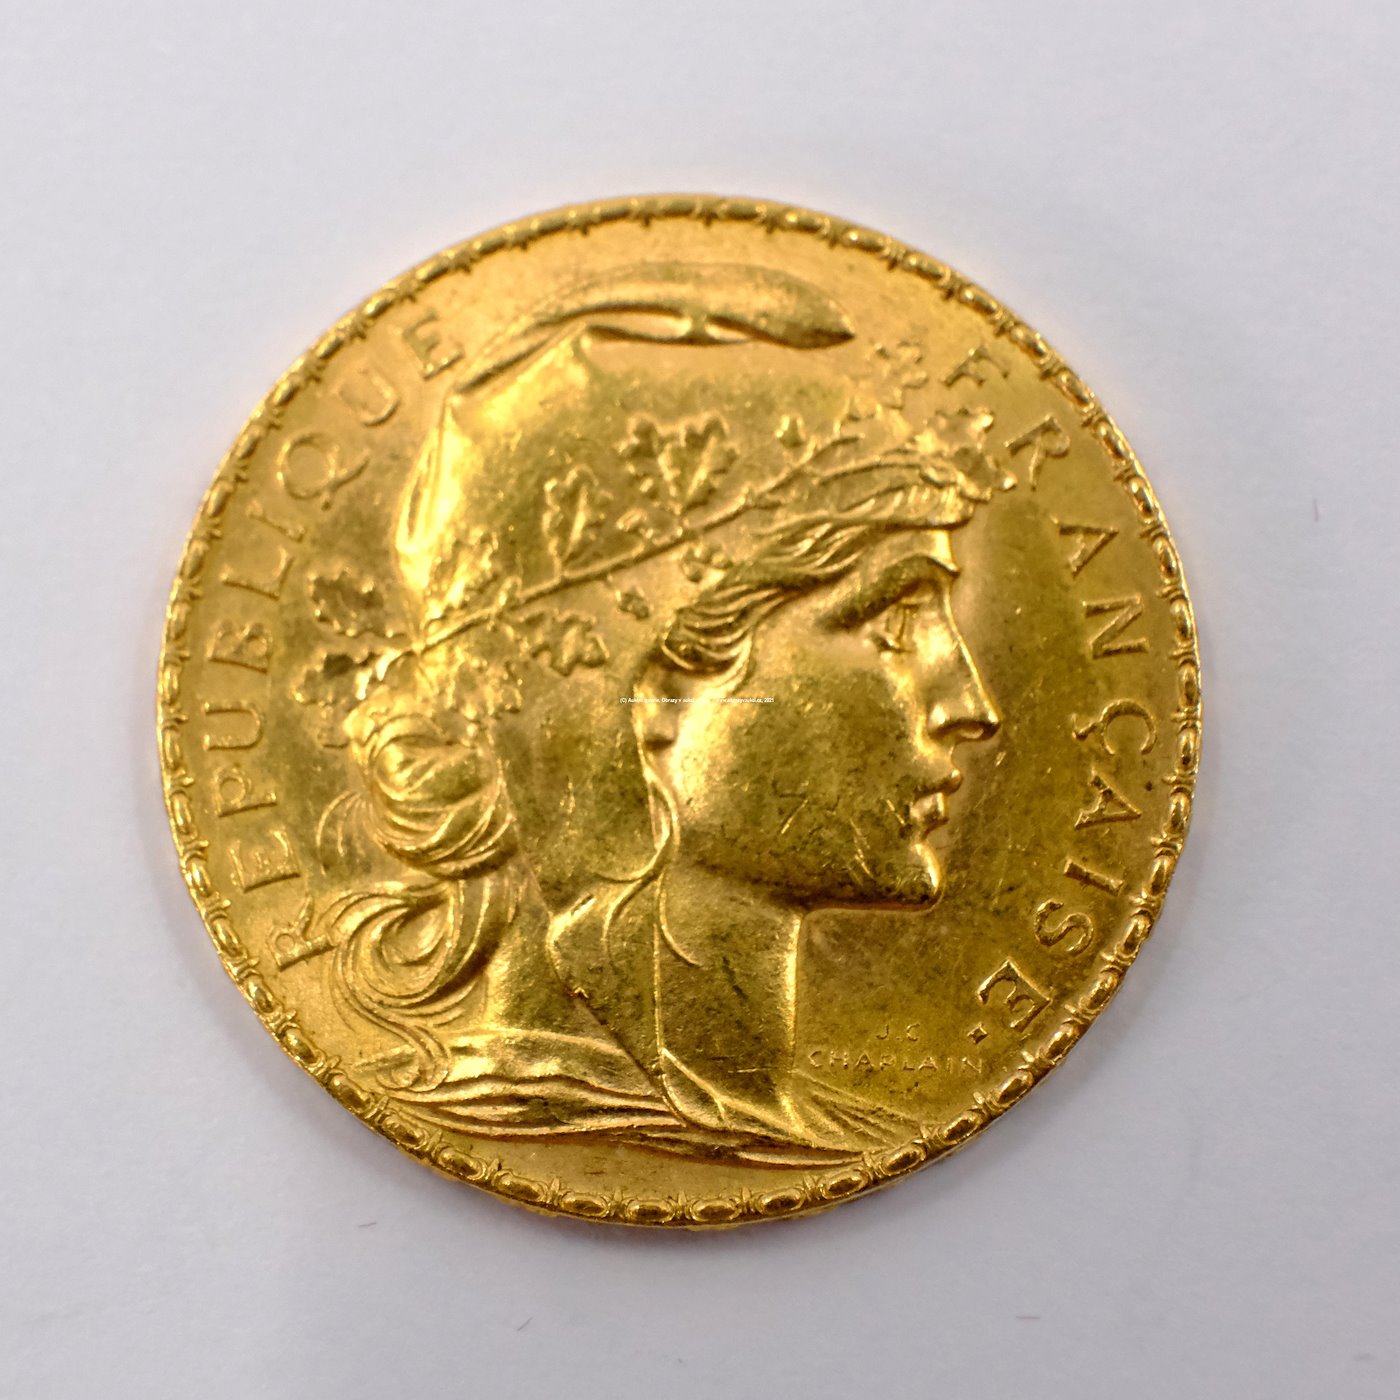 .. - Francie zlatý 20 frank ROOSTER 1907. Zlato 900/1000, hrubá hmotnost 6,44g